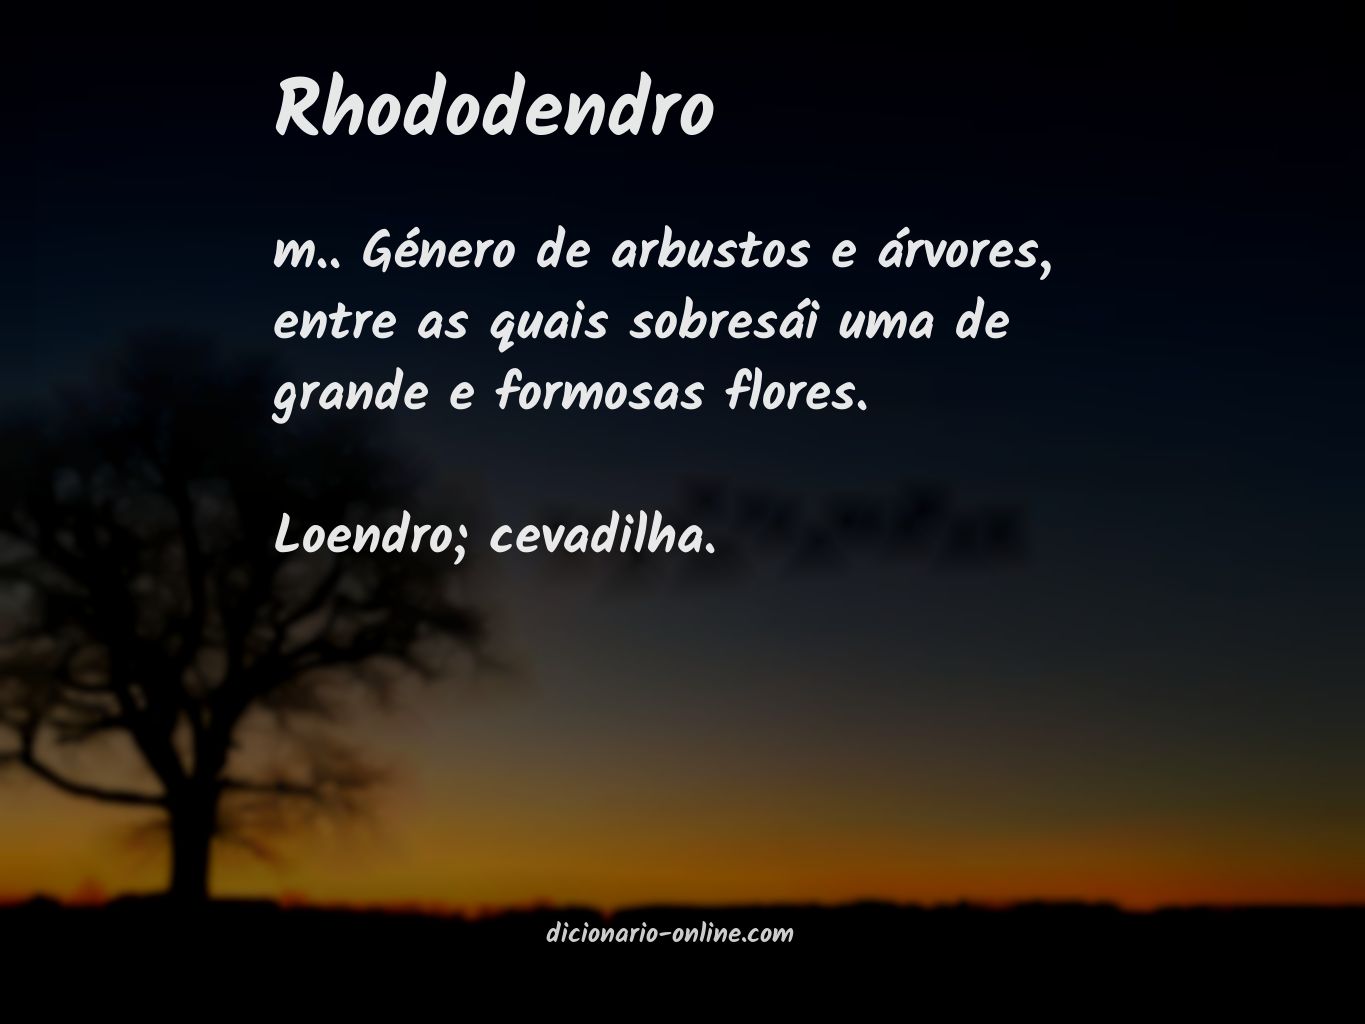 Significado de rhododendro